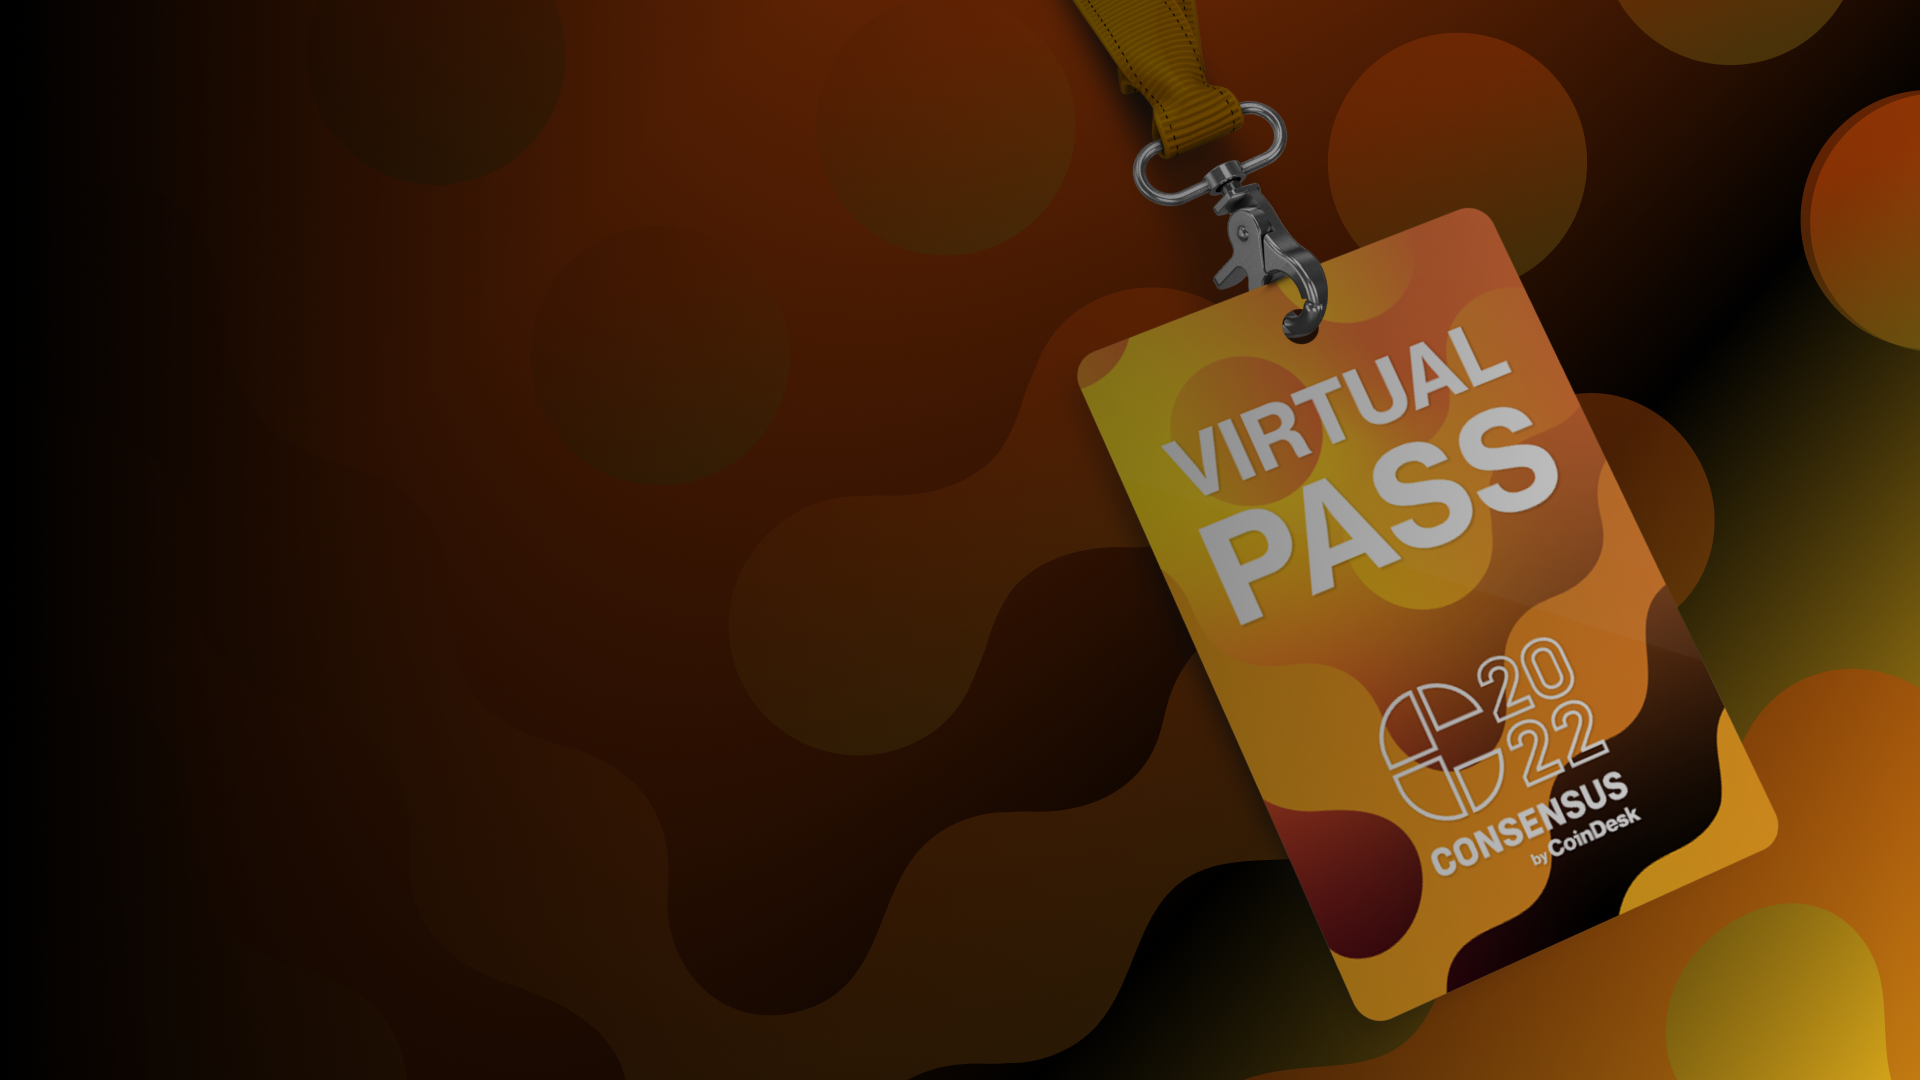 Virtual Pass